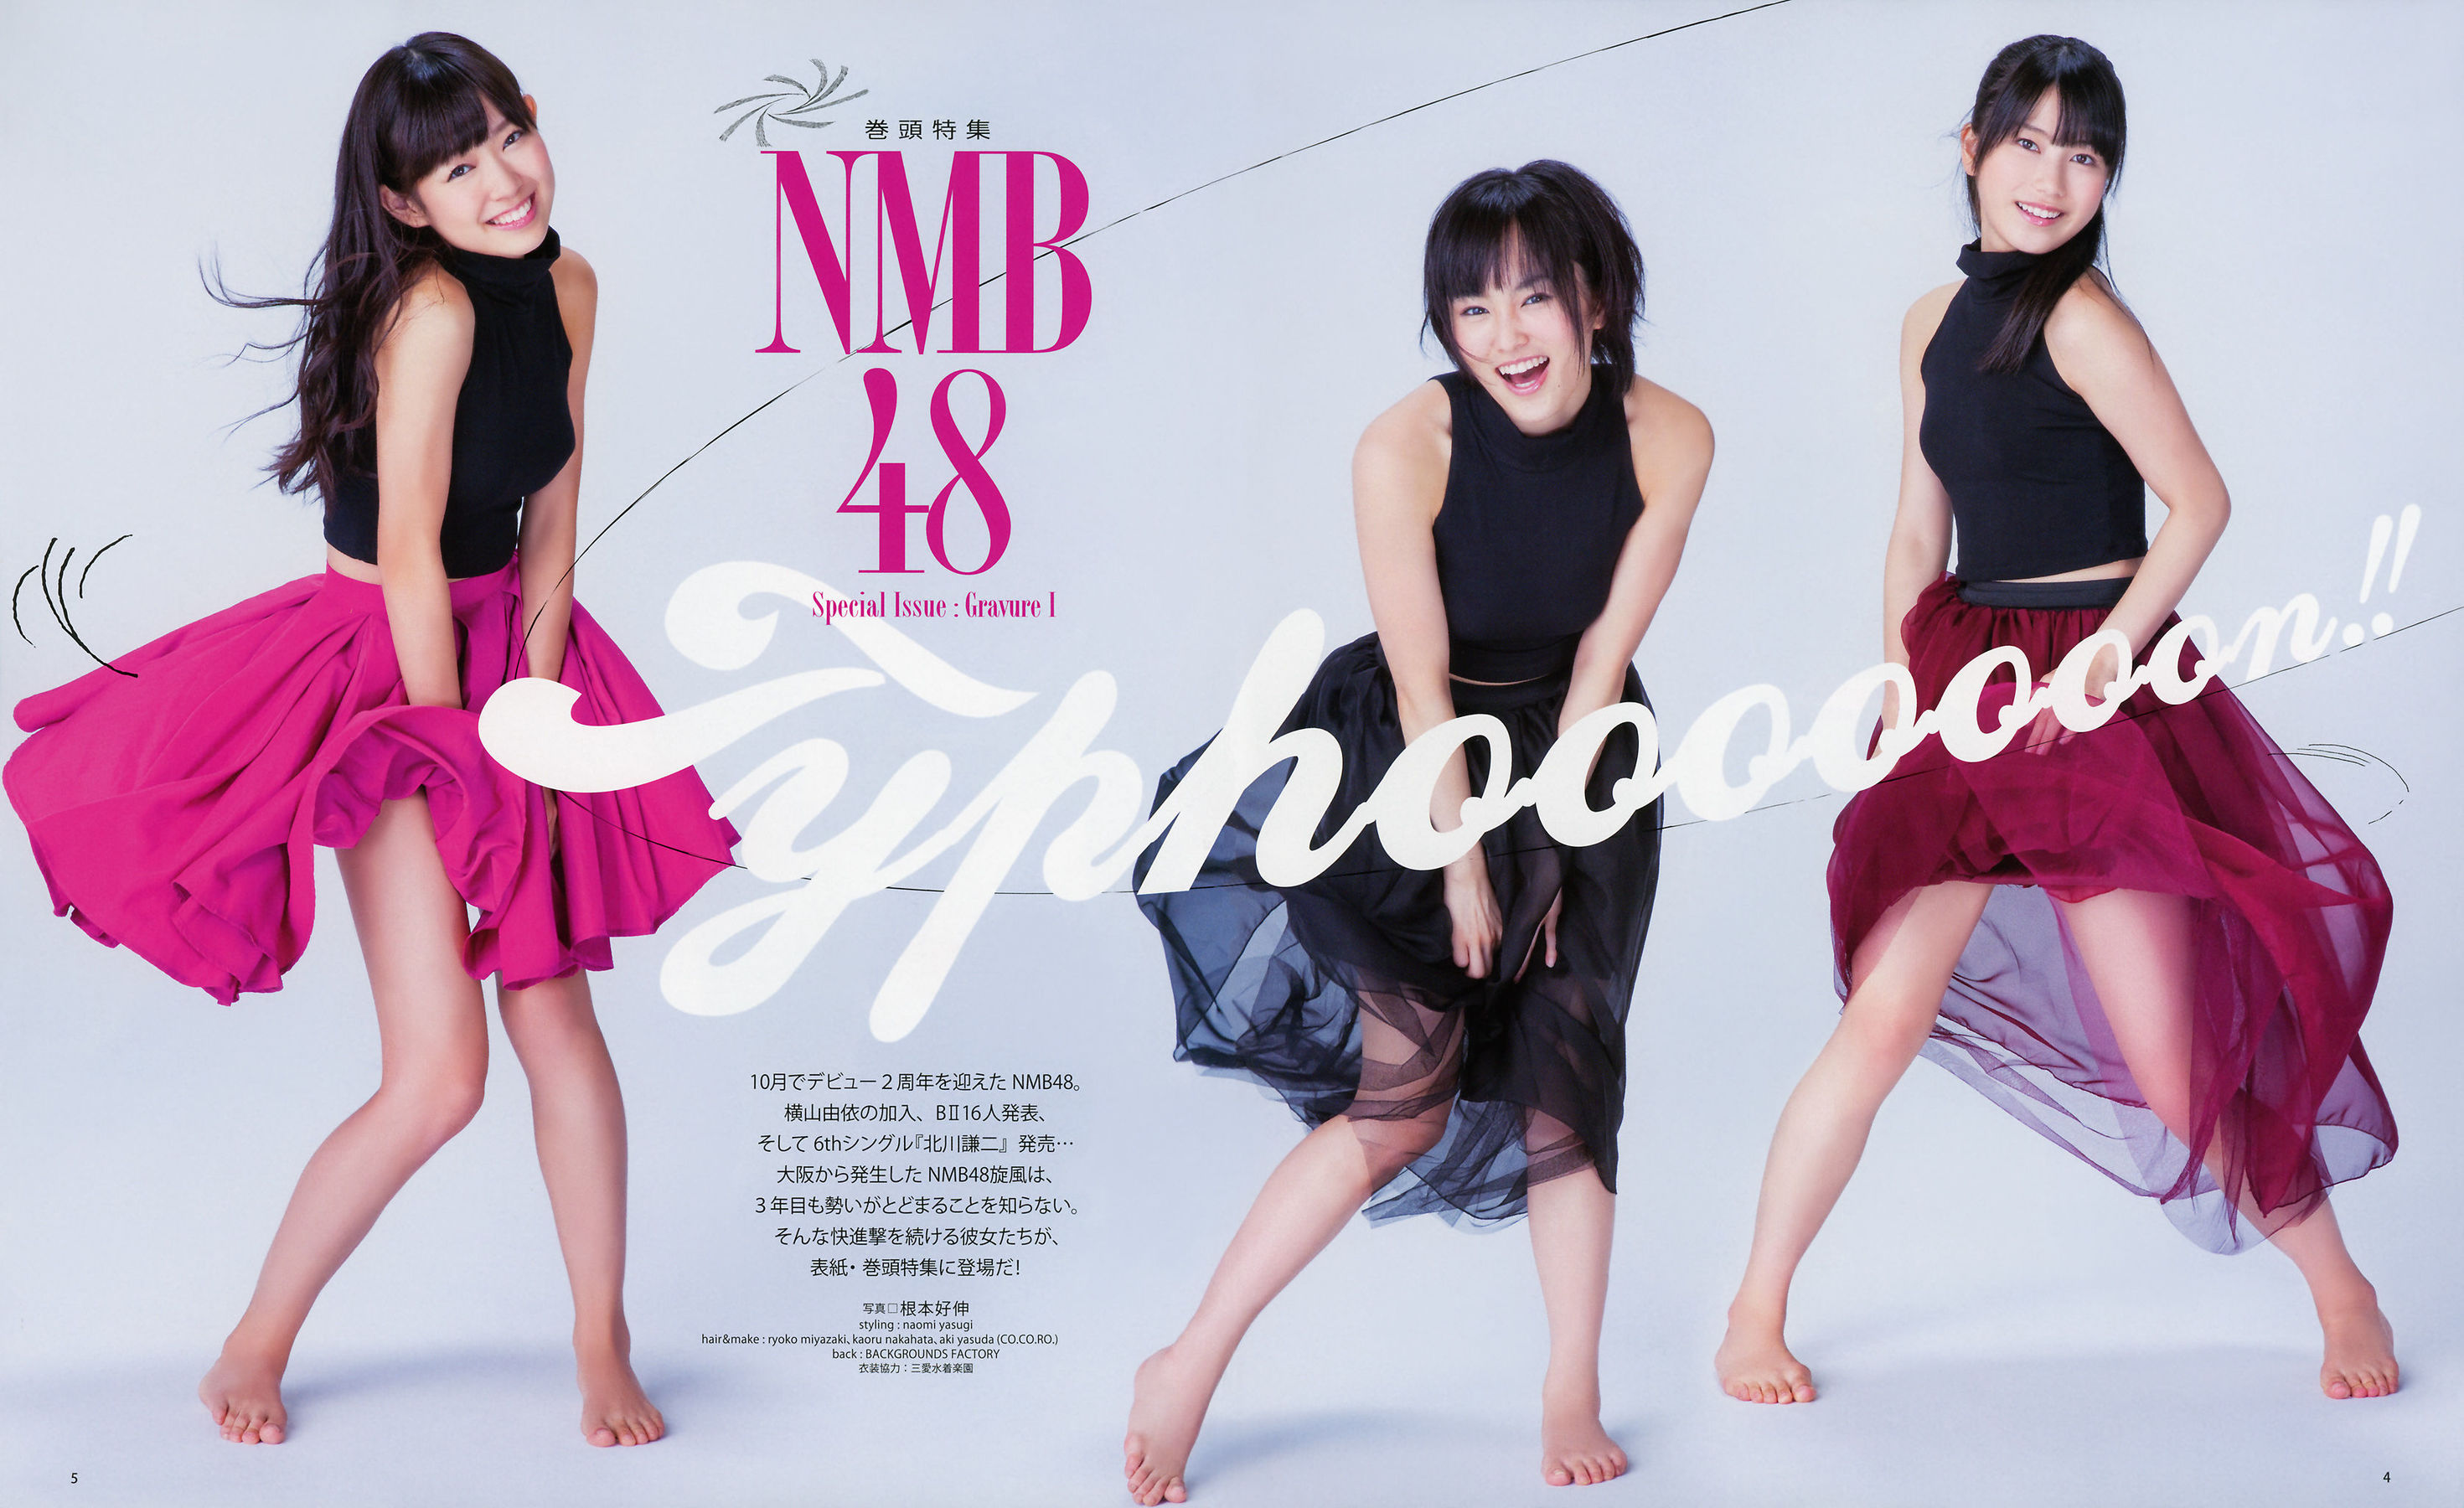 [网络美女]杂志:NMB48高品质壁纸图片珍藏版(20P)